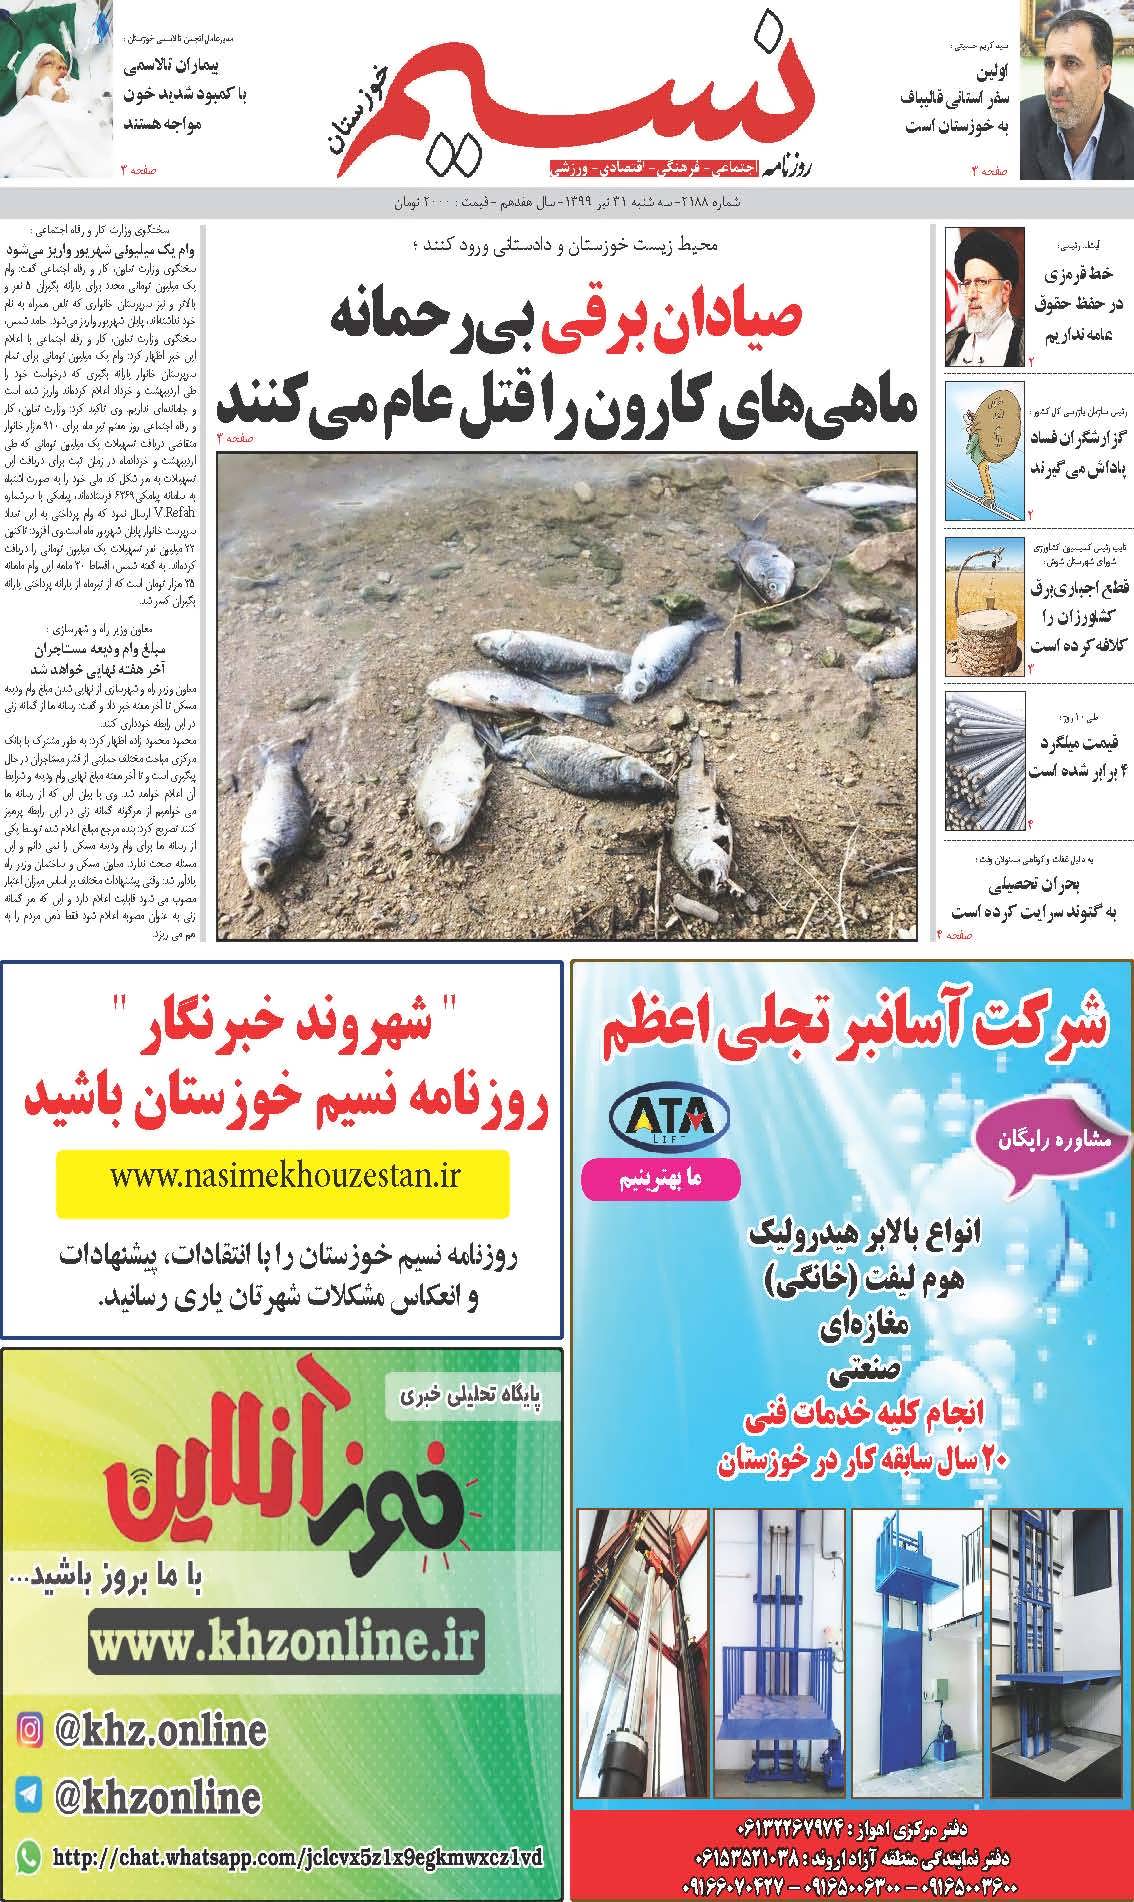 صفحه اصلی روزنامه نسیم شماره 2188 